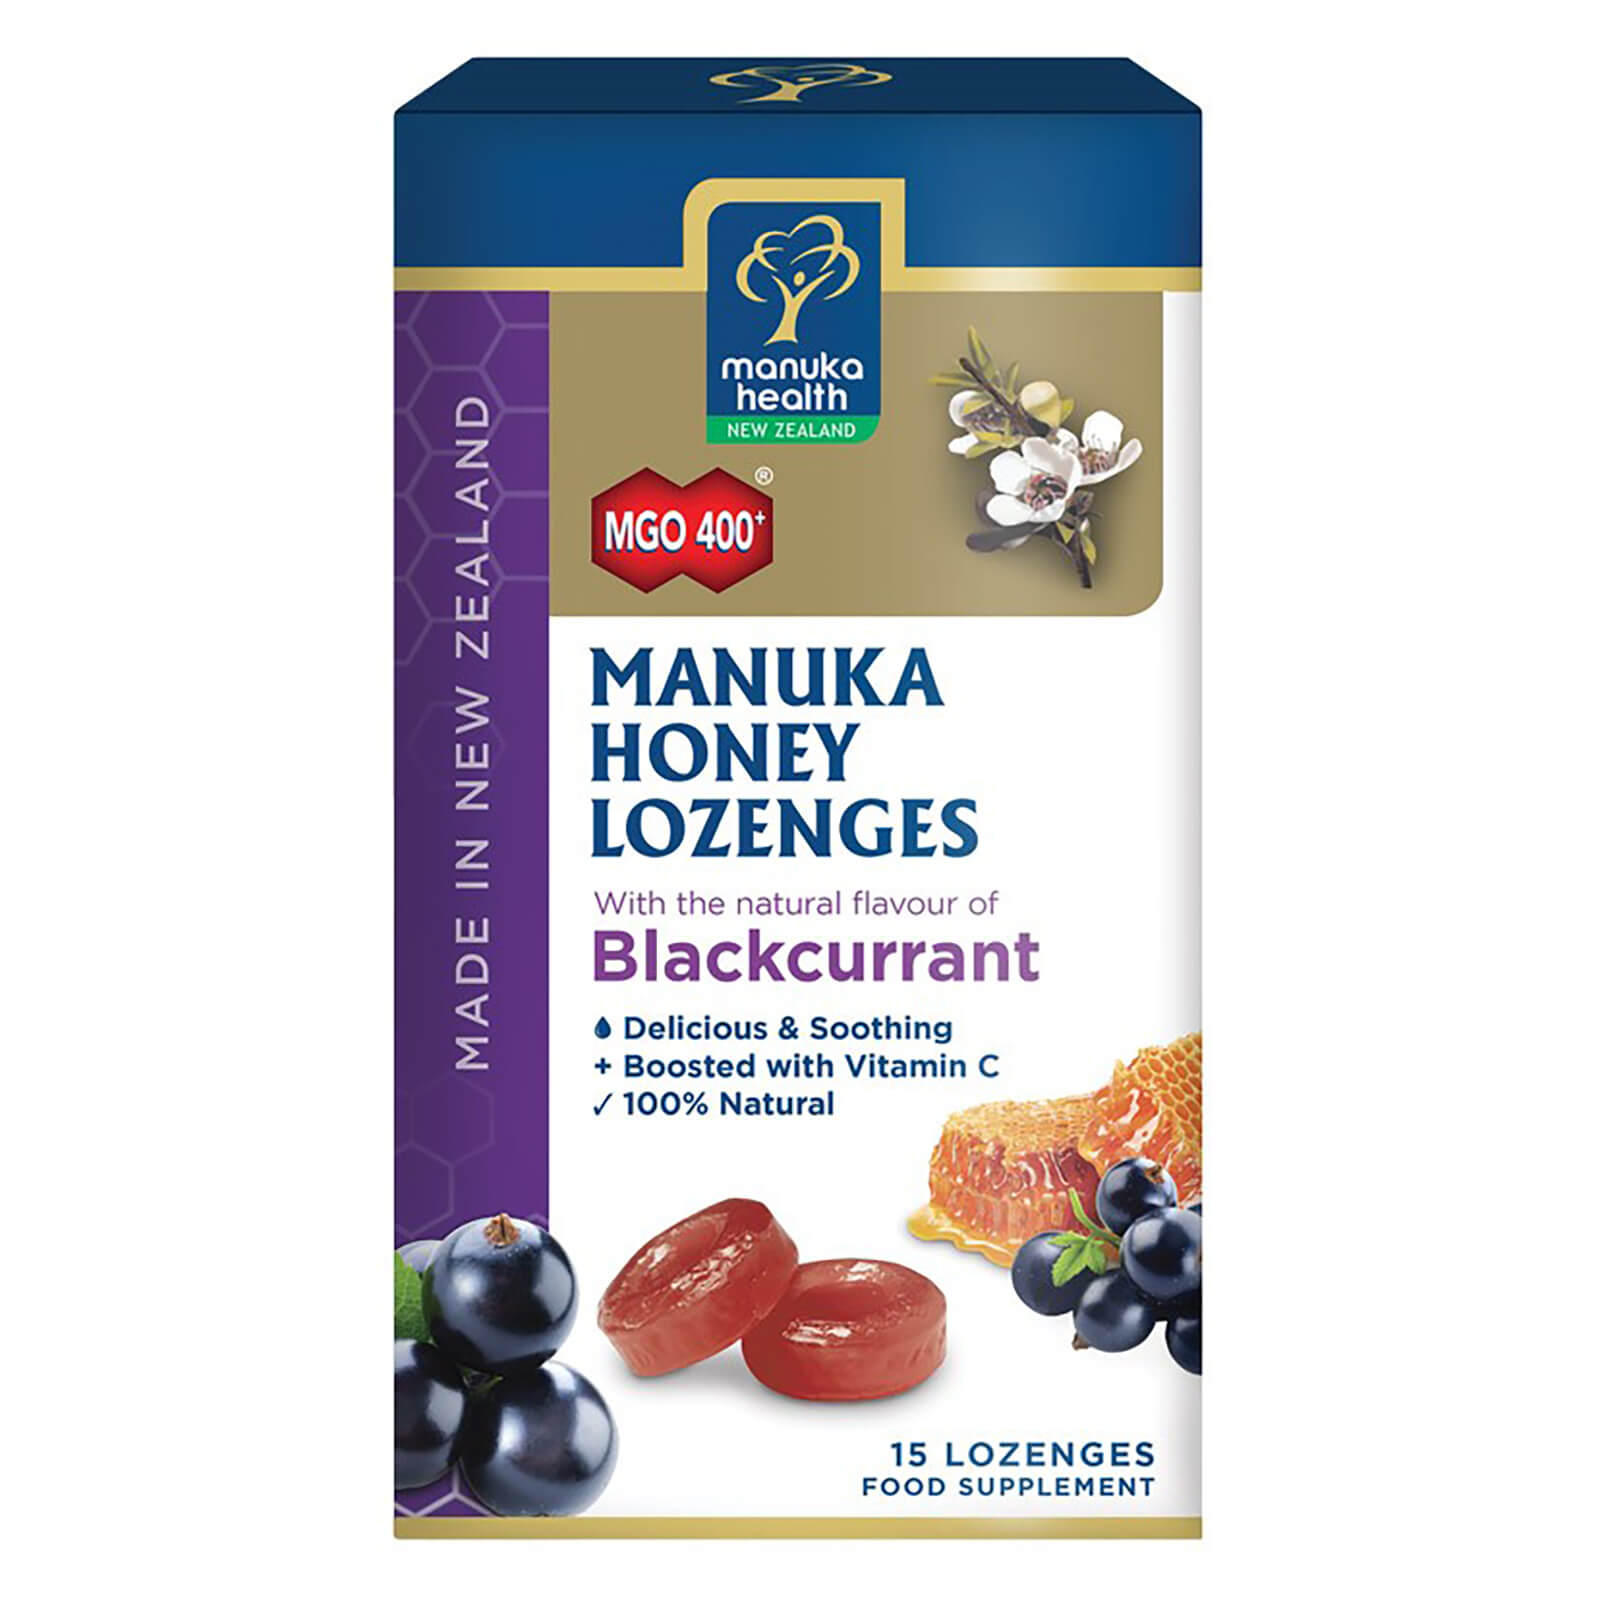 MGO 400+ Manuka Honey Lozenges with Blackcurrant – 15 Lozenges lookfantastic.com imagine